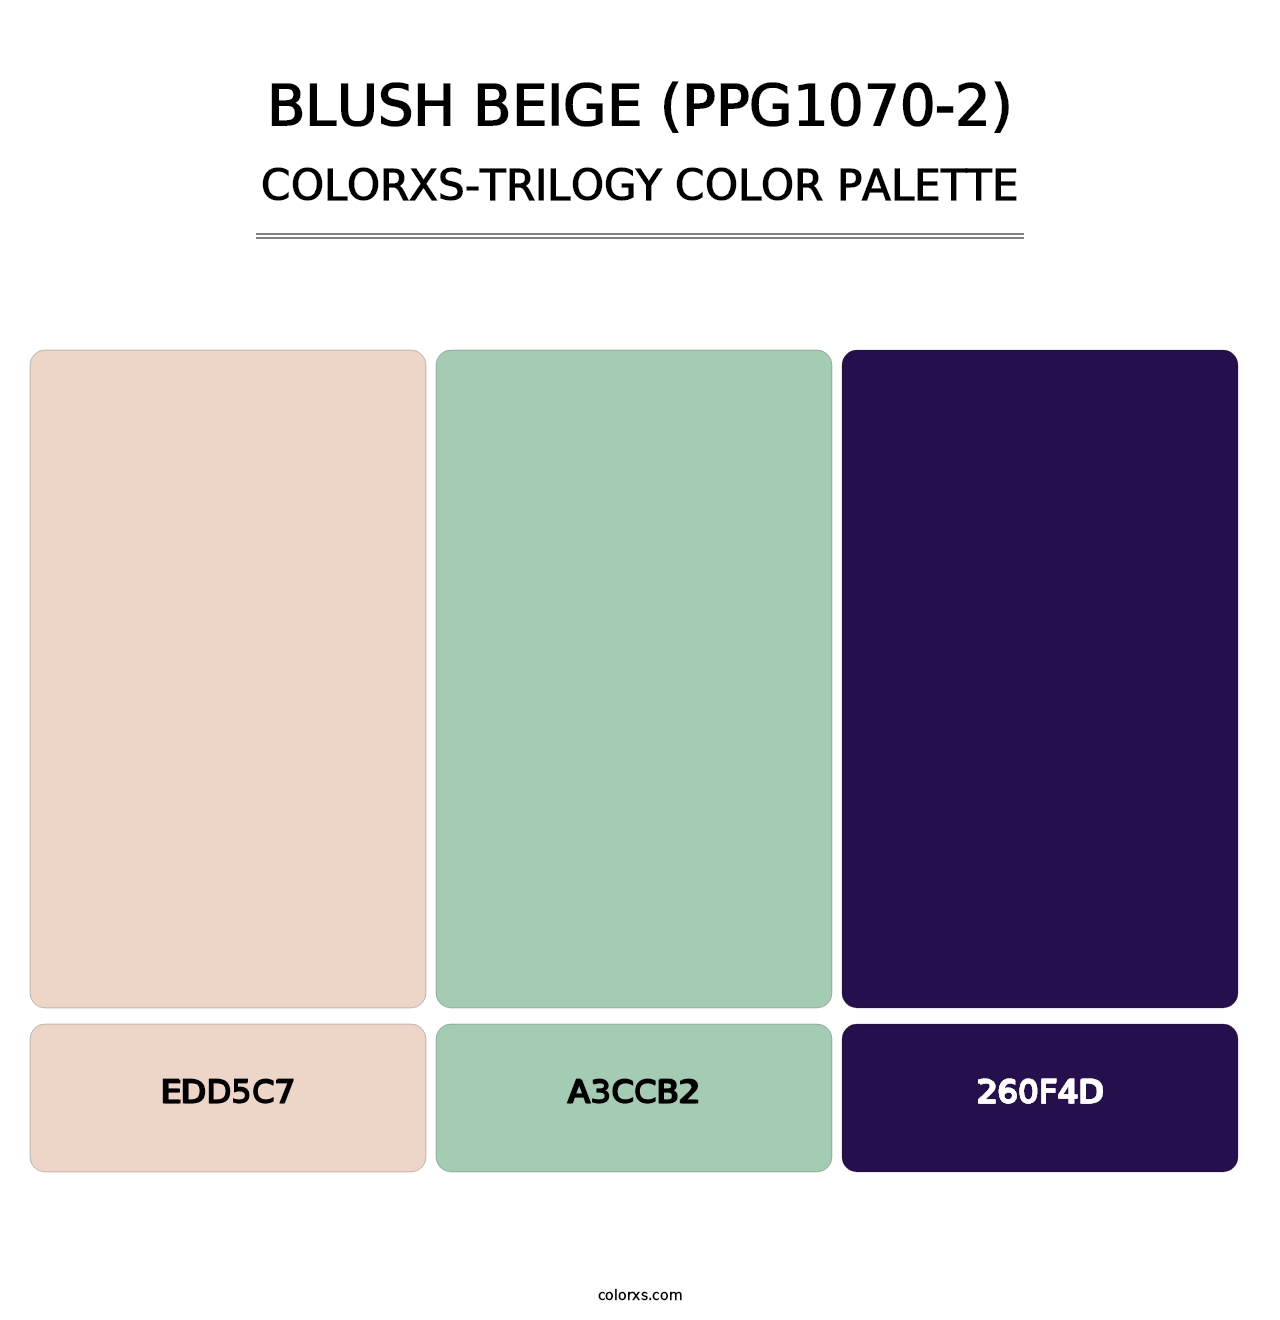 Blush Beige (PPG1070-2) - Colorxs Trilogy Palette